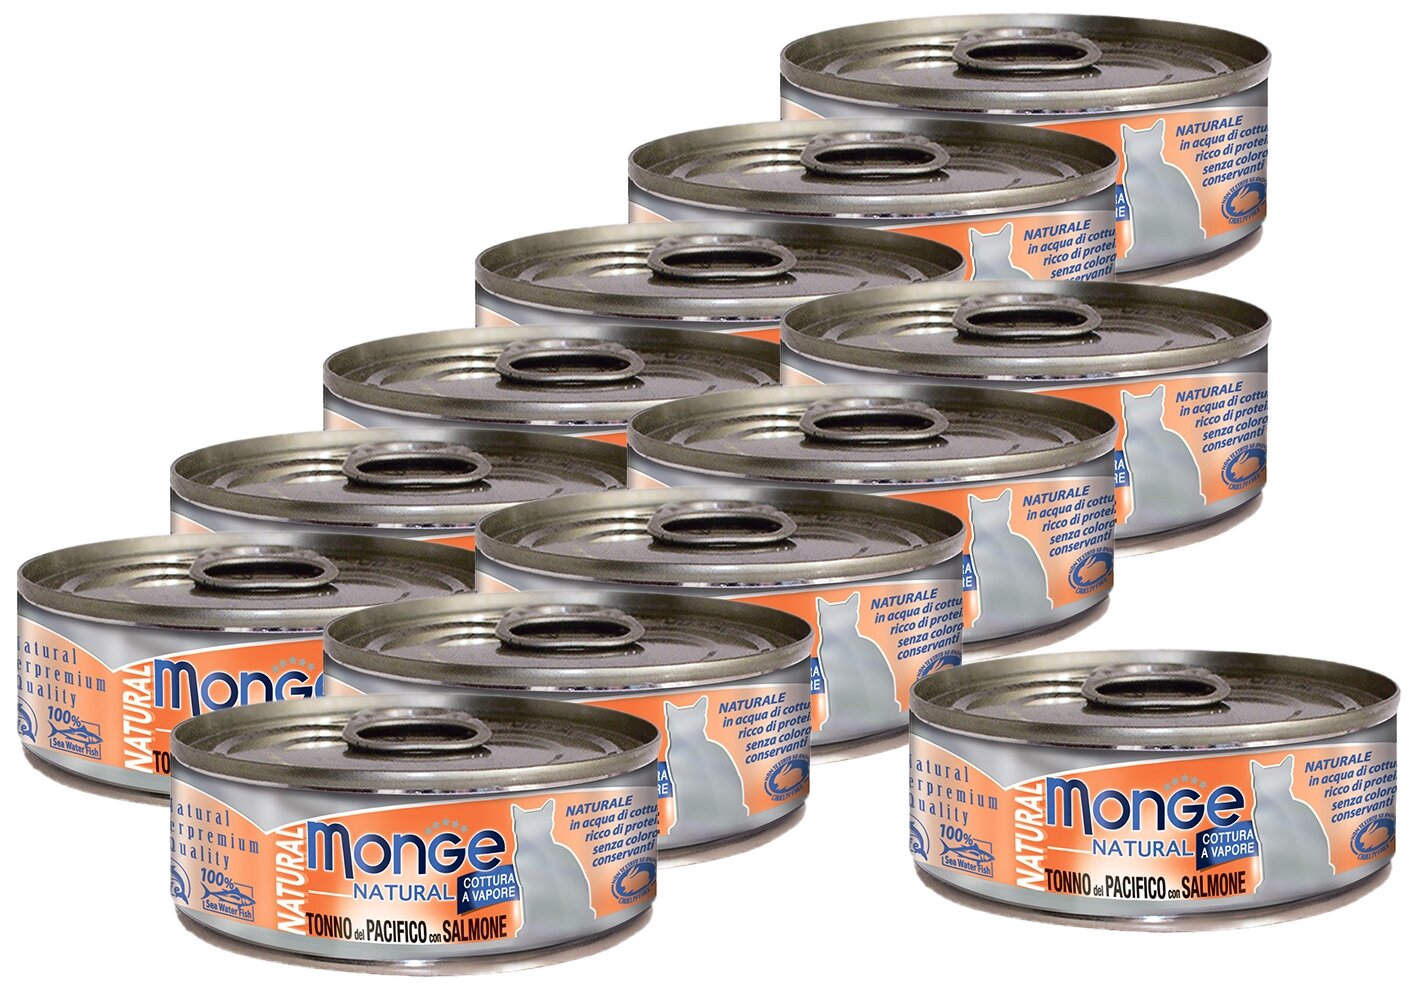 Monge Cat Natural консервы для кошек тихоокеанский тунец с лососем 12шт по 80г - фотография № 1